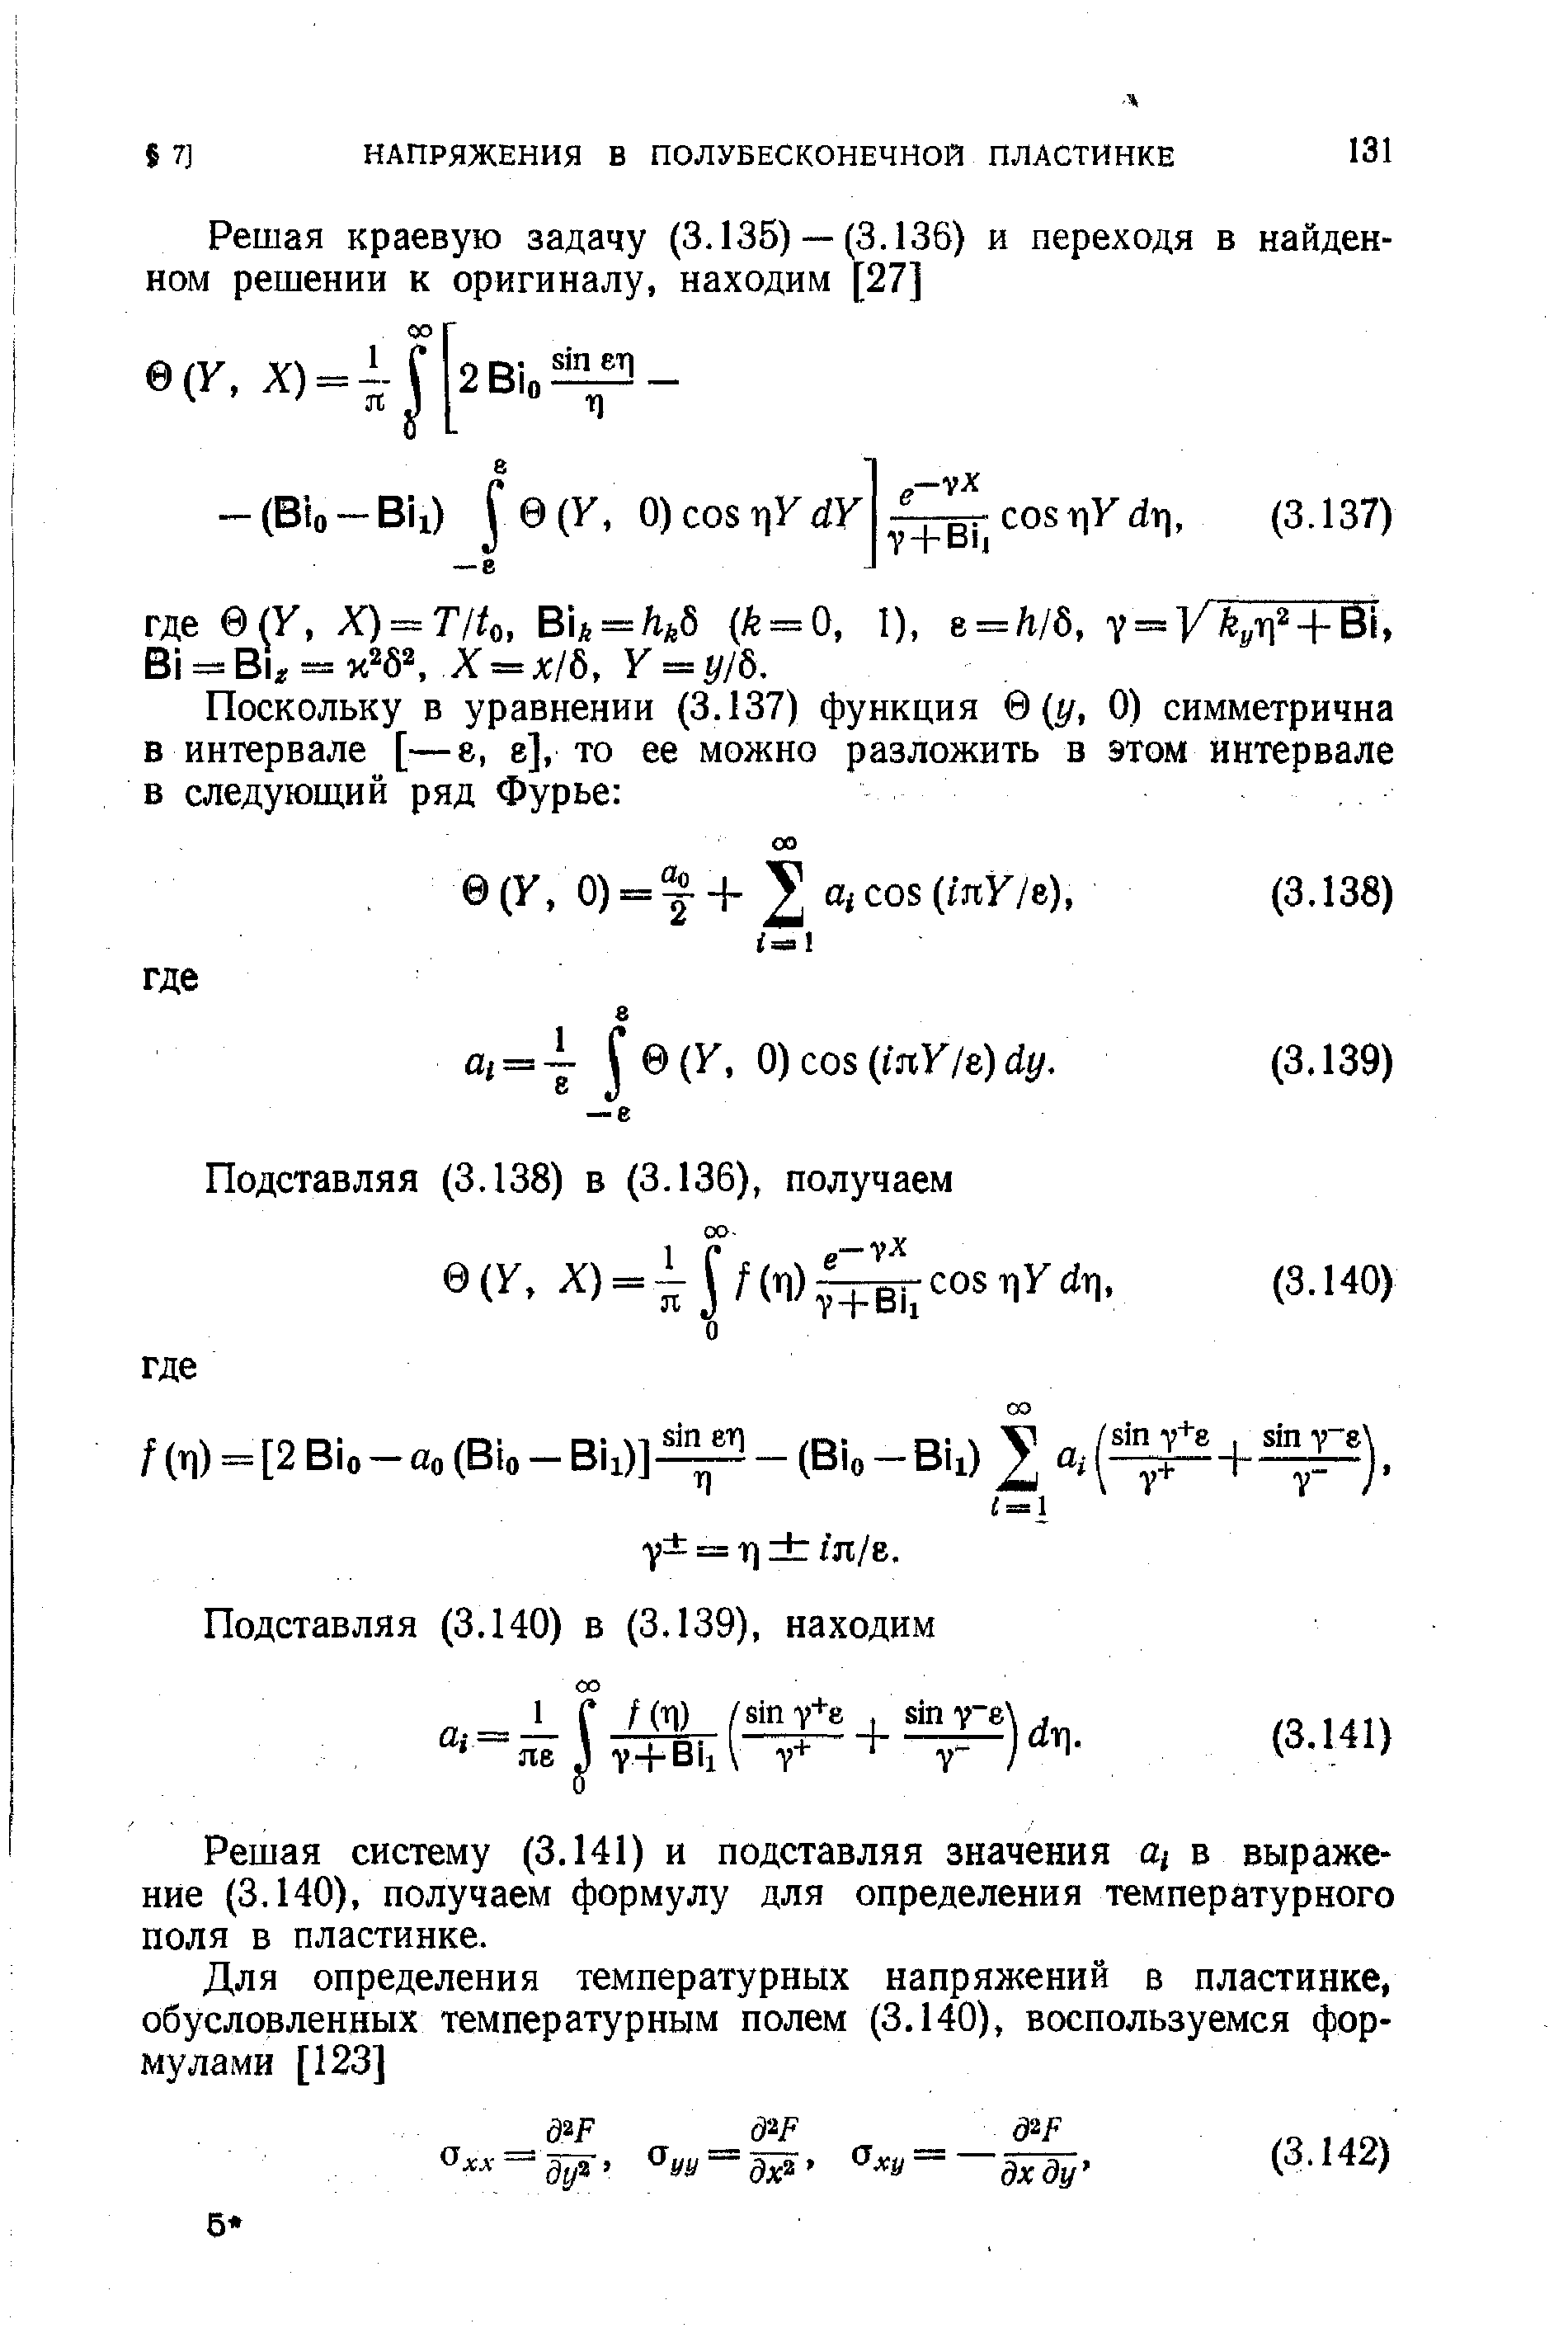 Решая систему (3.141) и подставляя значения щ в выражение (3.140), получаем формулу для определения температурного поля в пластинке.
